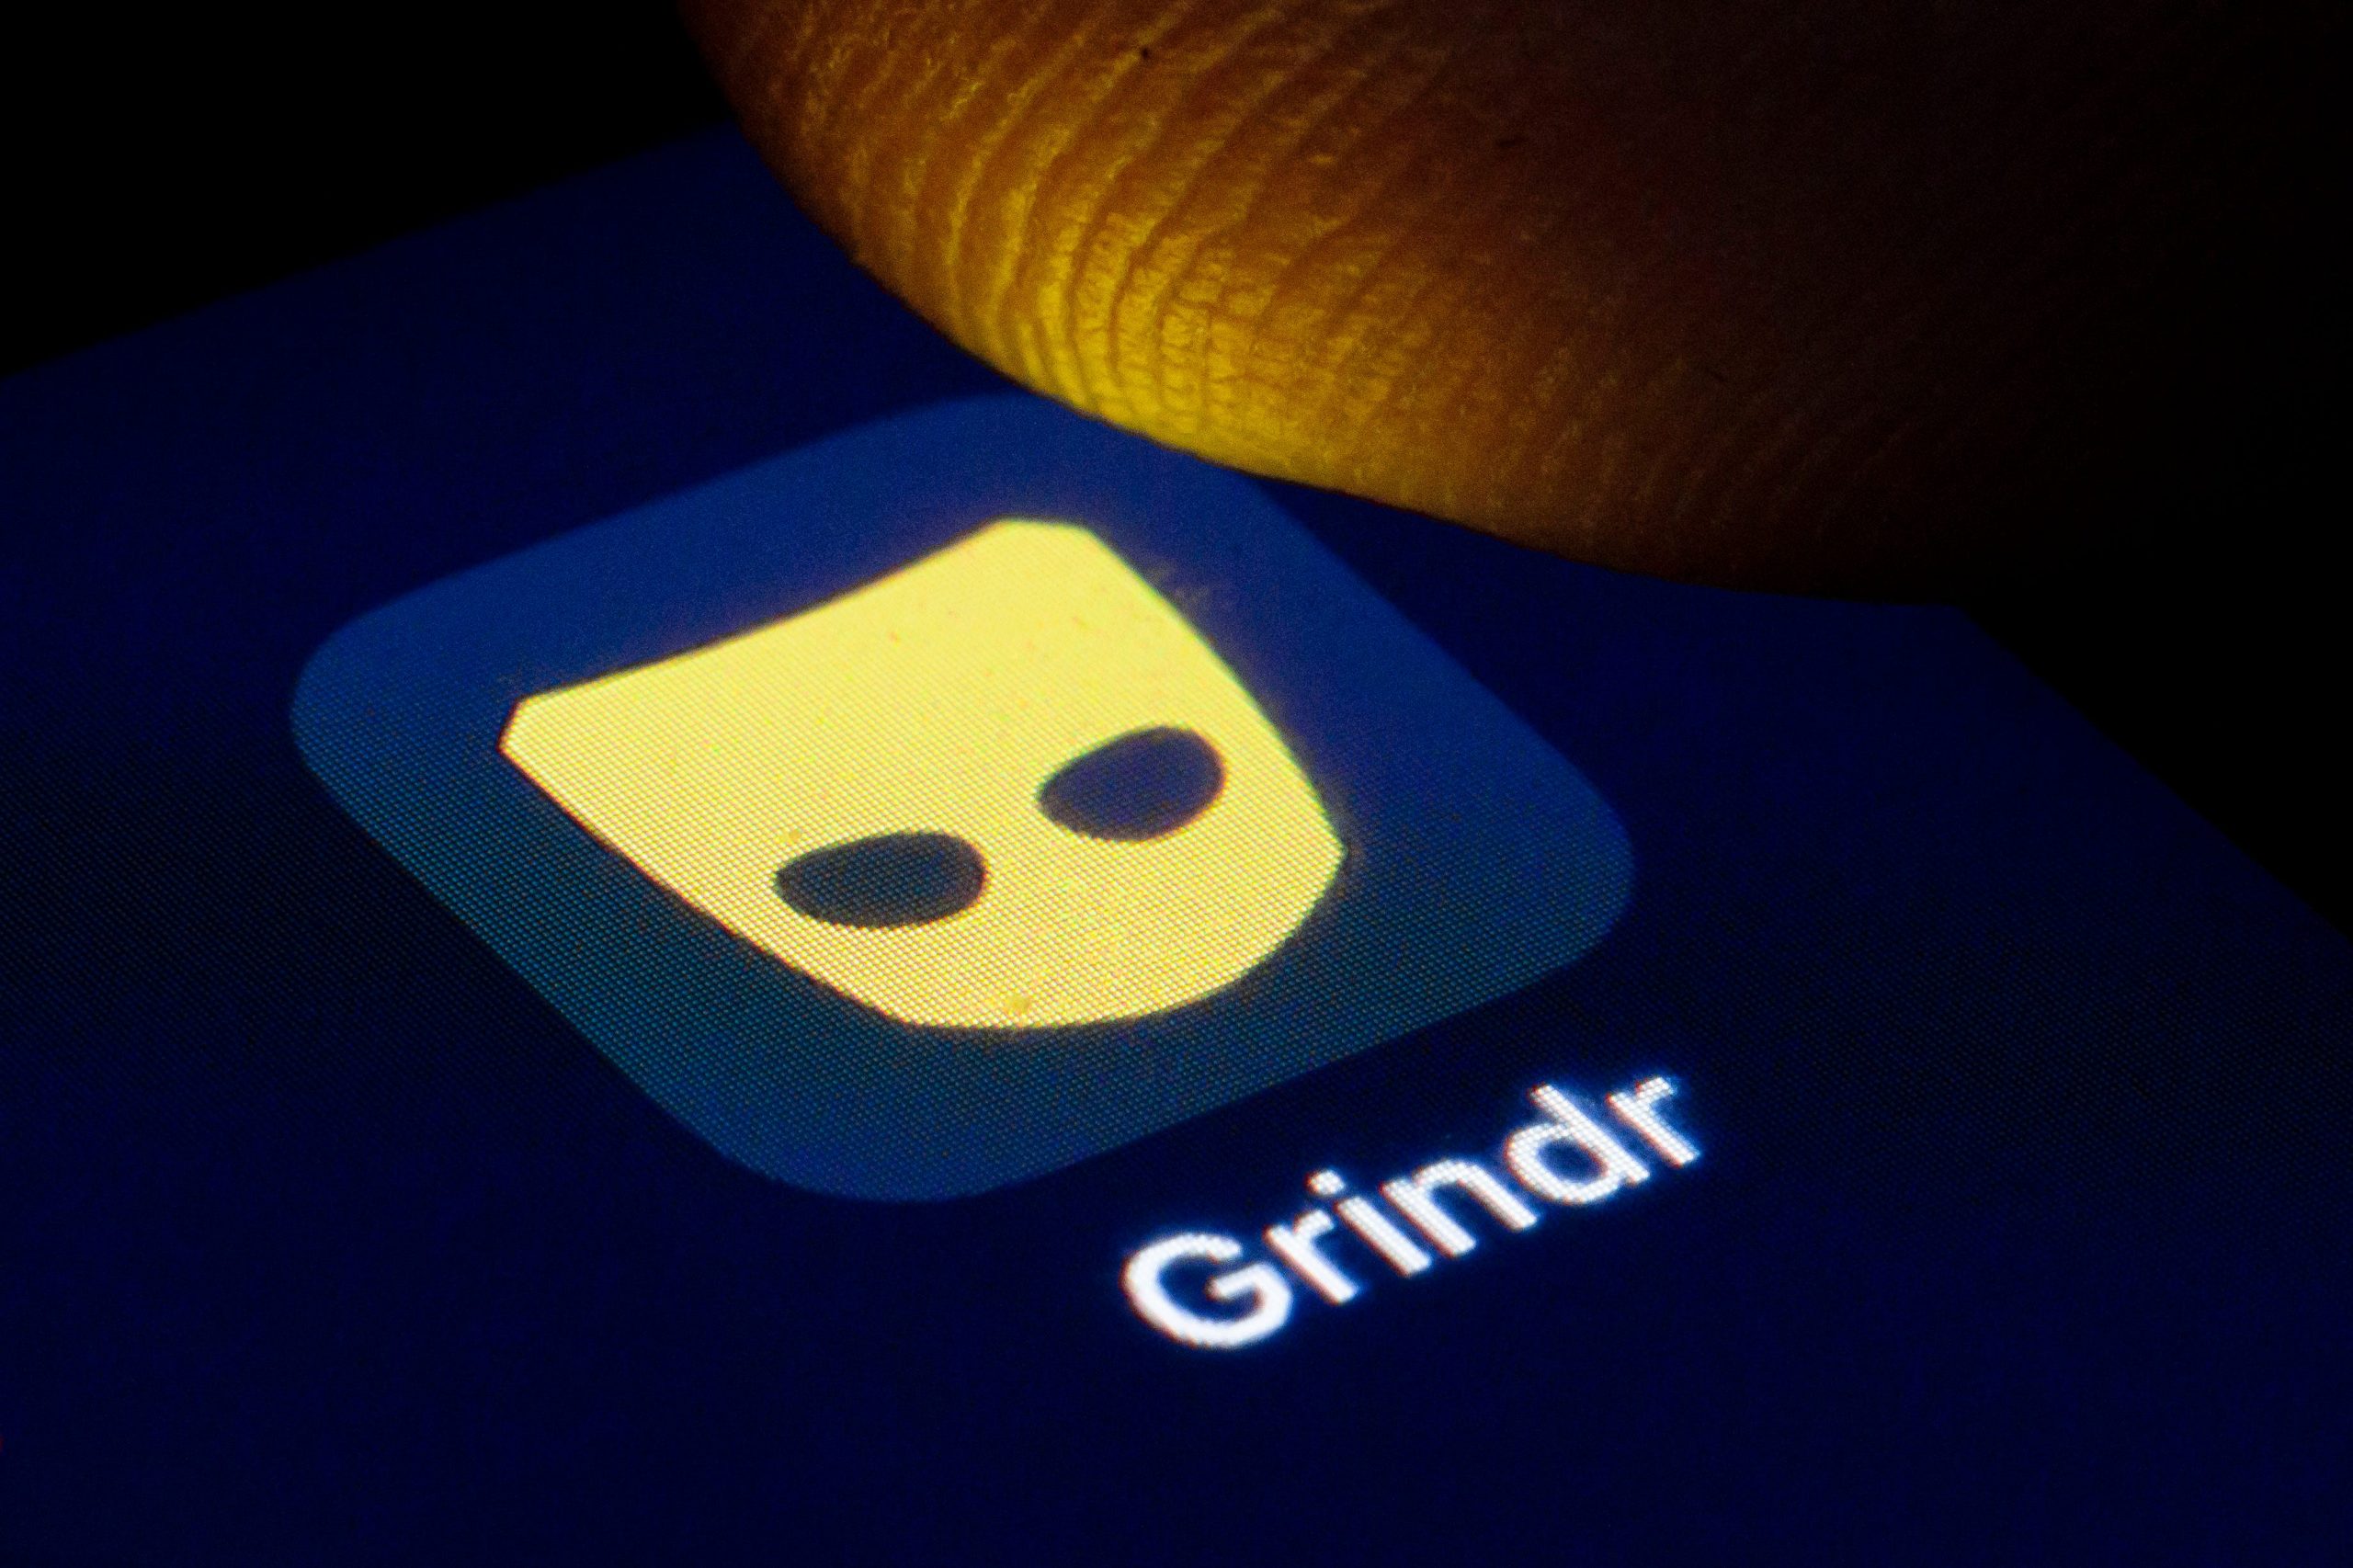 Grindr Gay Dating App